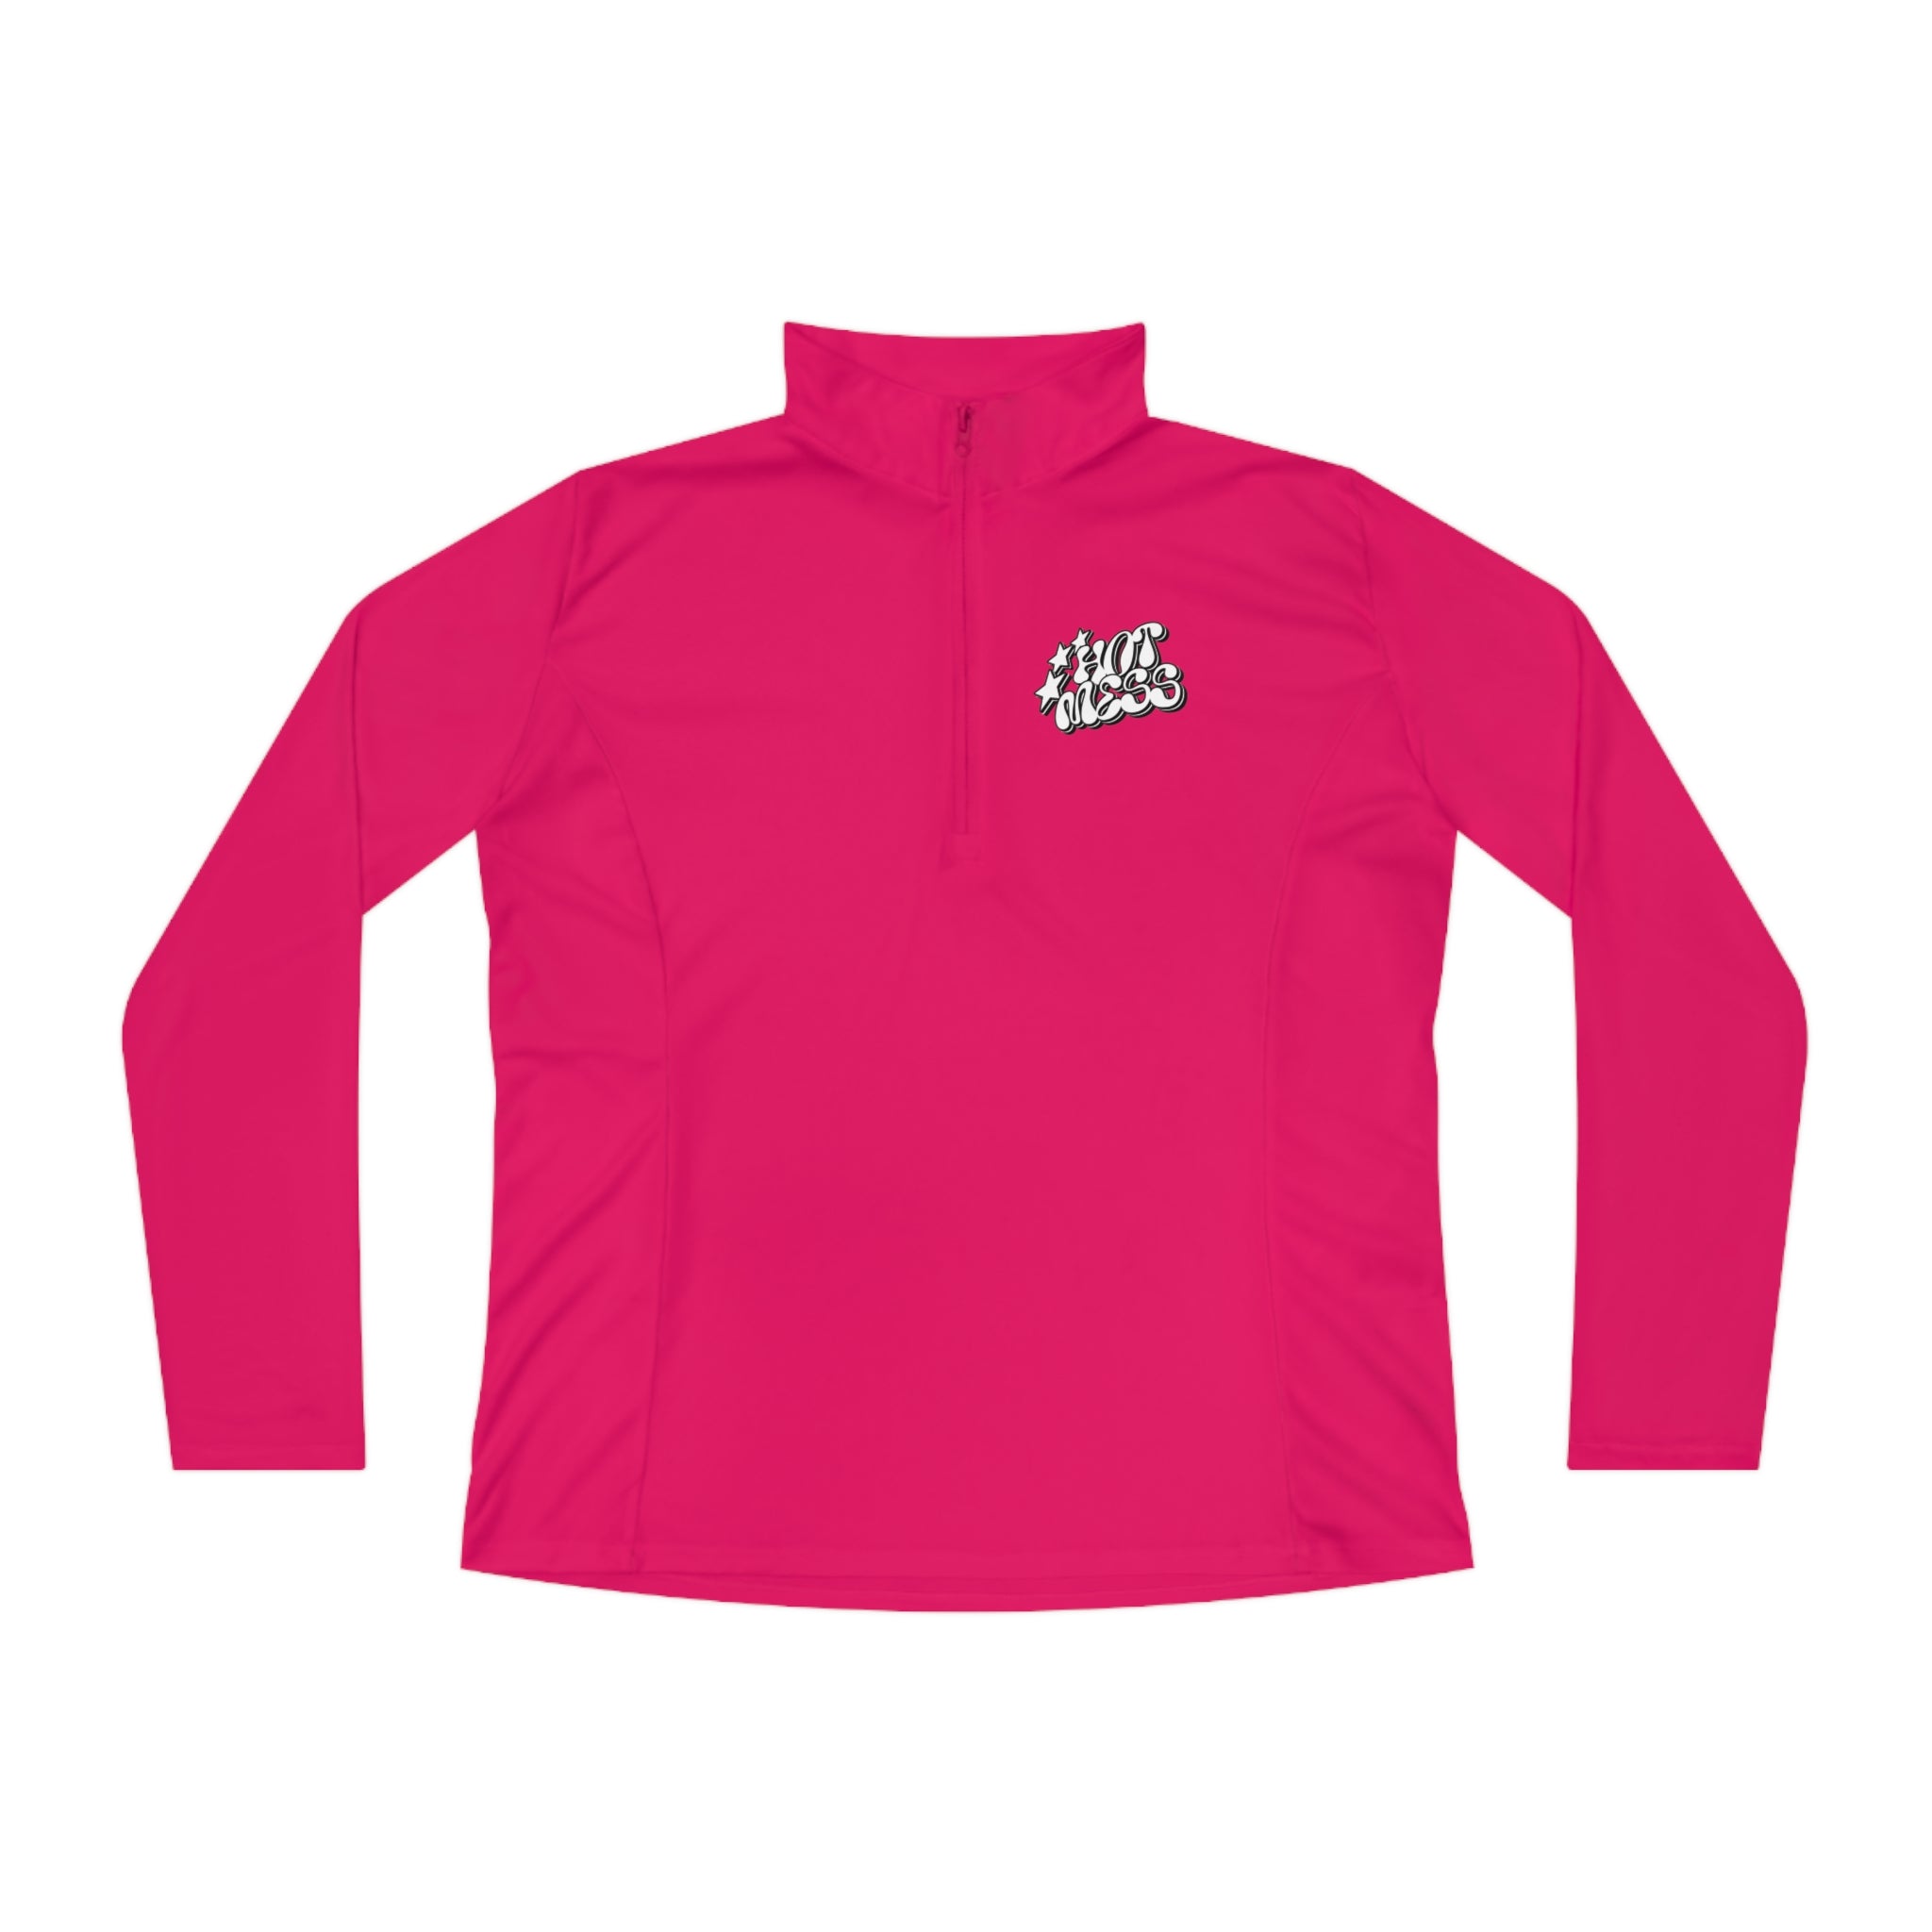 SORTYGO - Hot Mess Women Quarter Zip Pullover in Pink Raspberry S